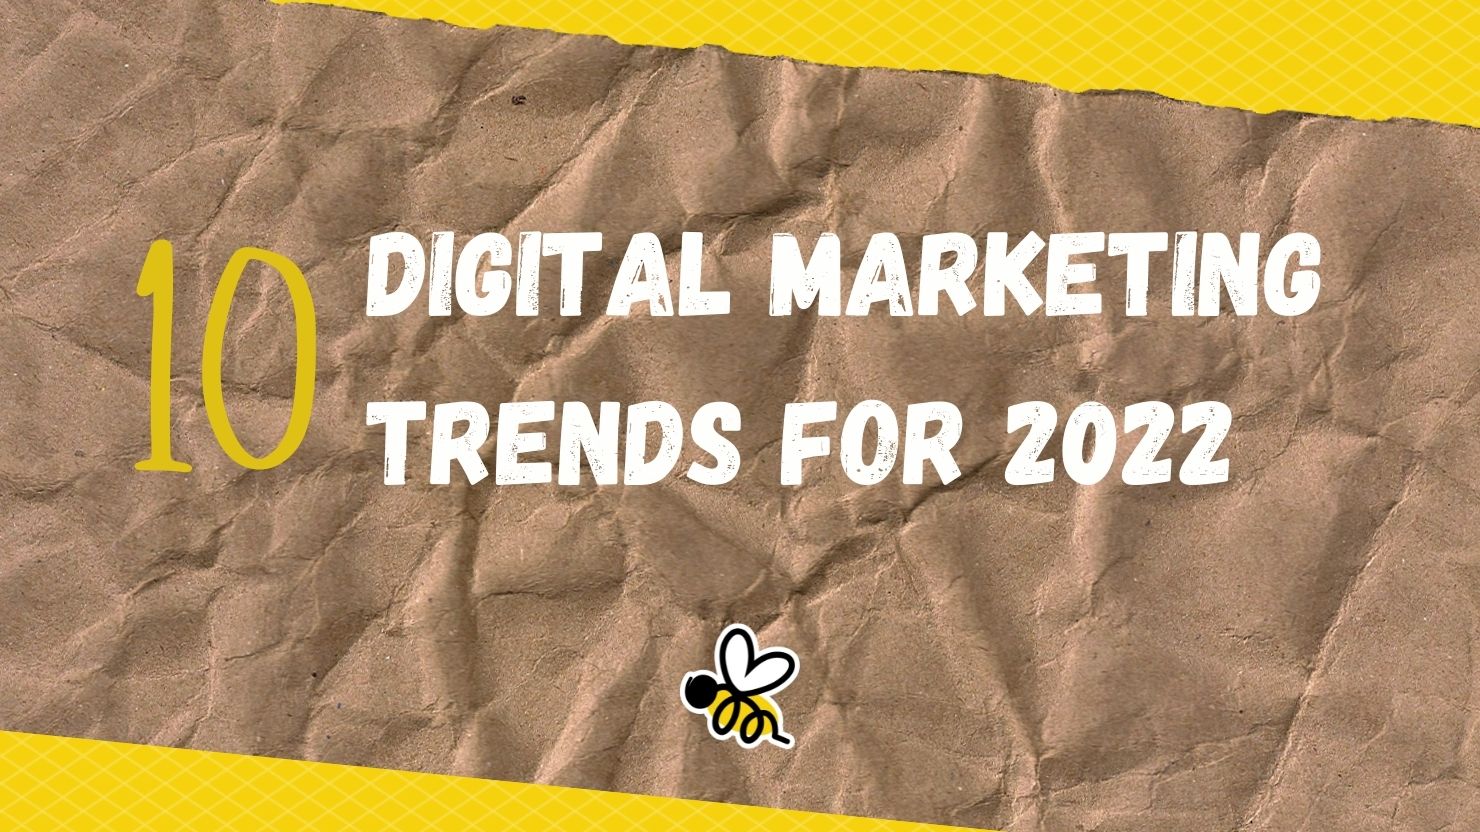 10 digital marketing trends